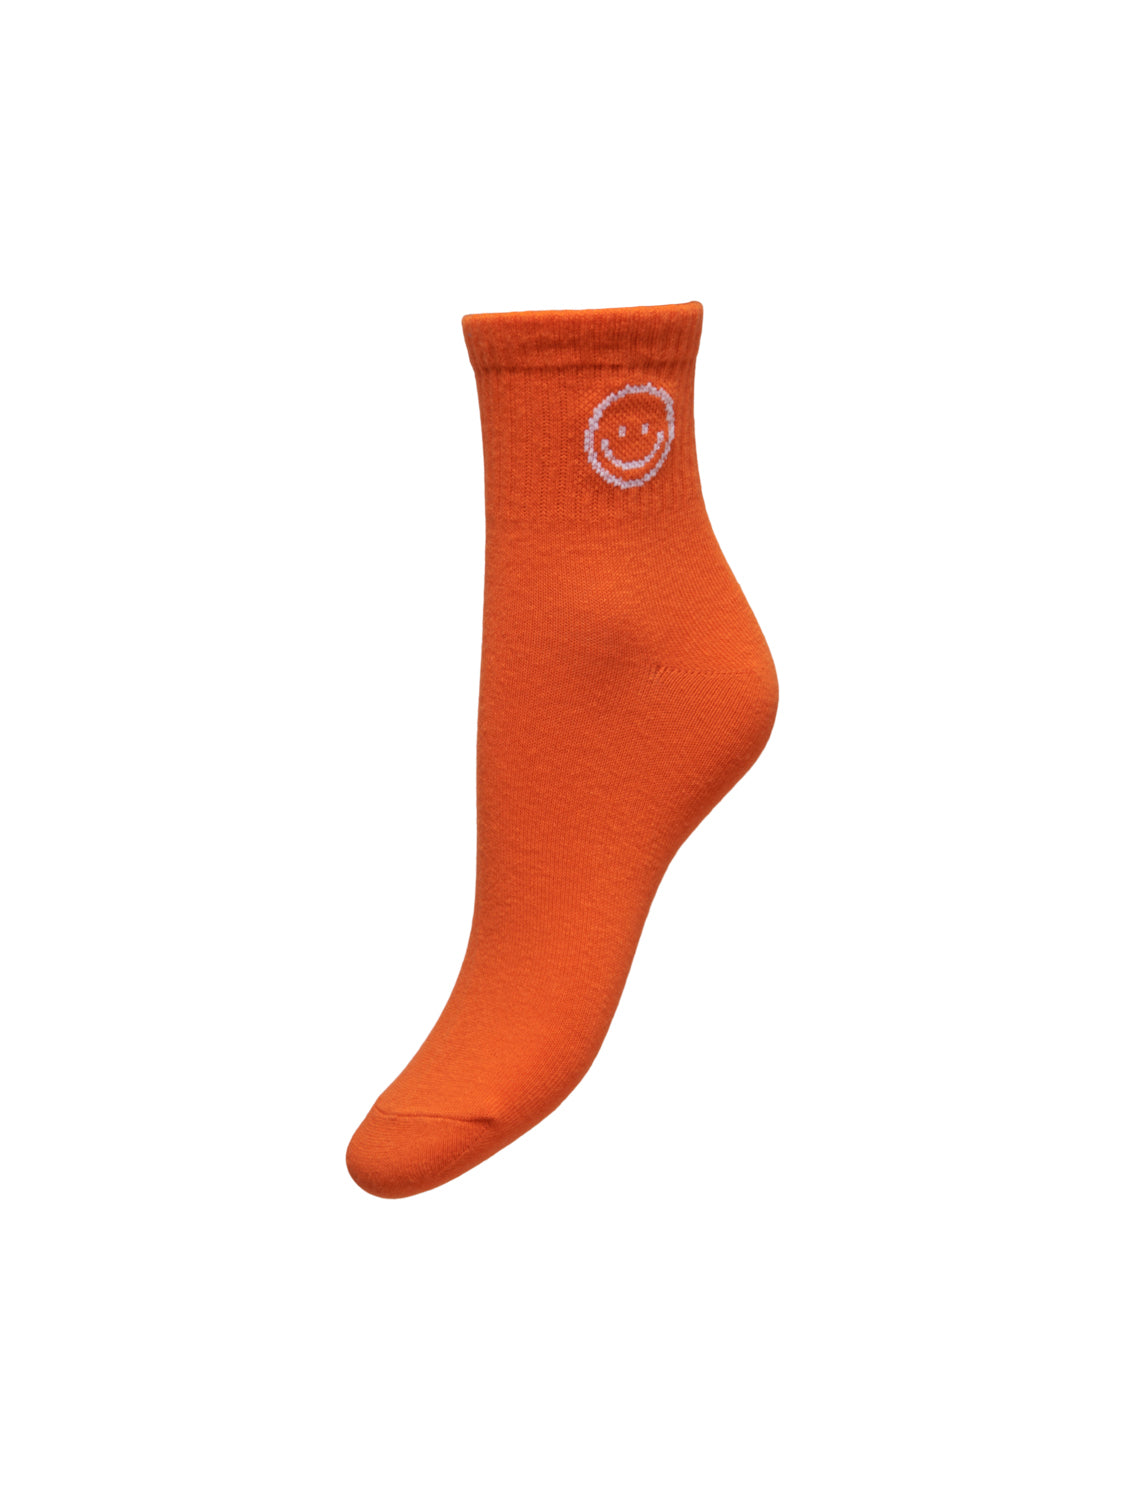 PGSPORTY Socks - Oransje